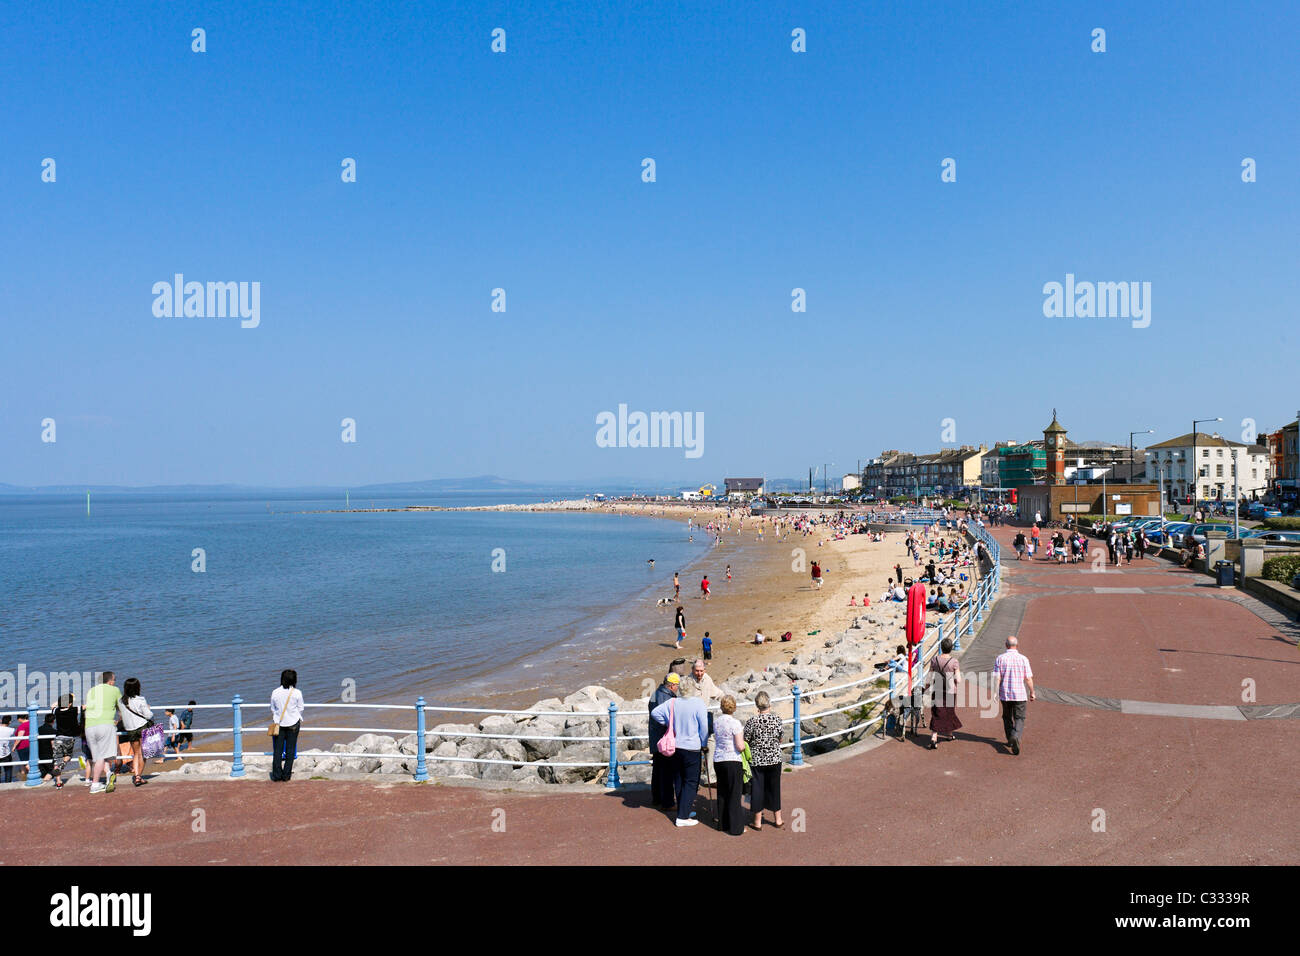 La passeggiata sul lungomare e dalla spiaggia della località balneare di Blackpool, Lancashire, Regno Unito Foto Stock